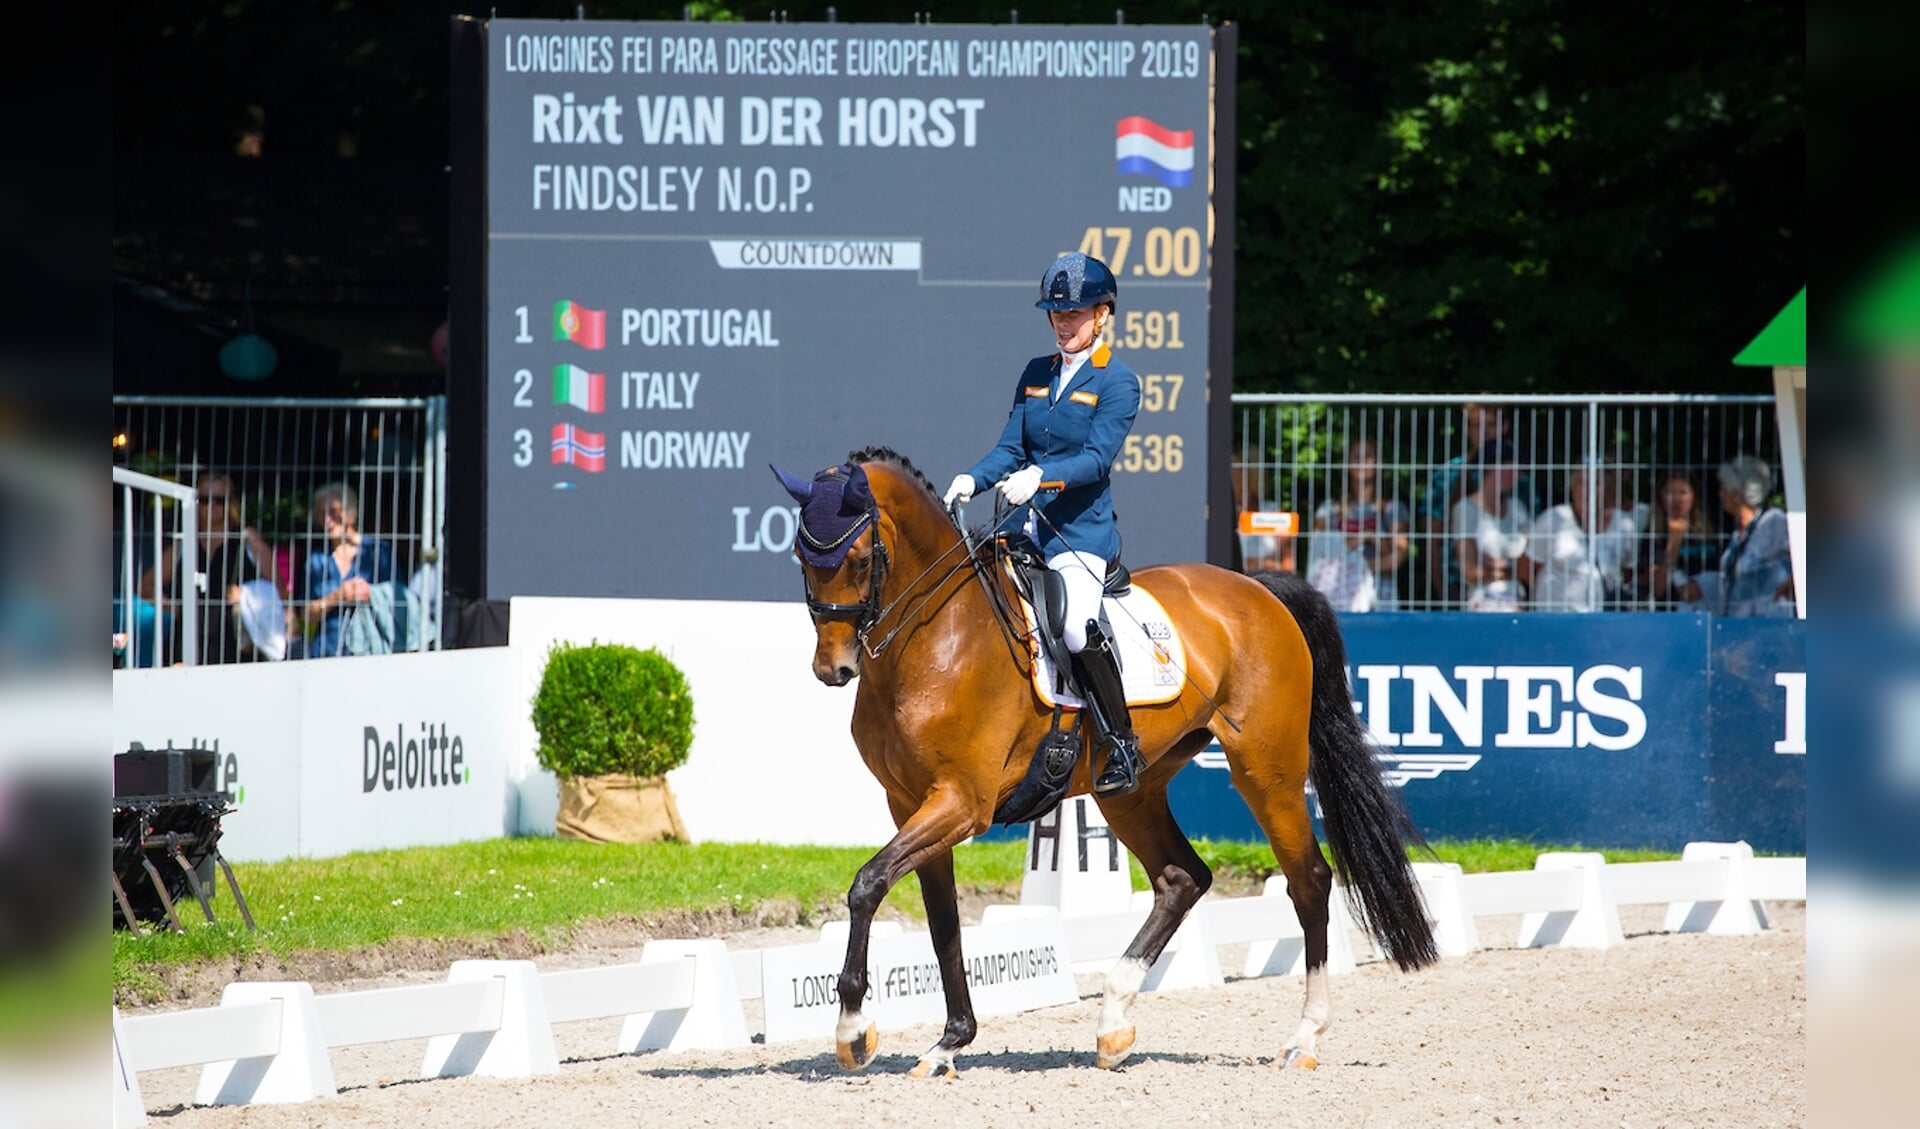 Rixt van der Horst - Findsley N.O.P.
FEI European Championships 2019
© DigiShots